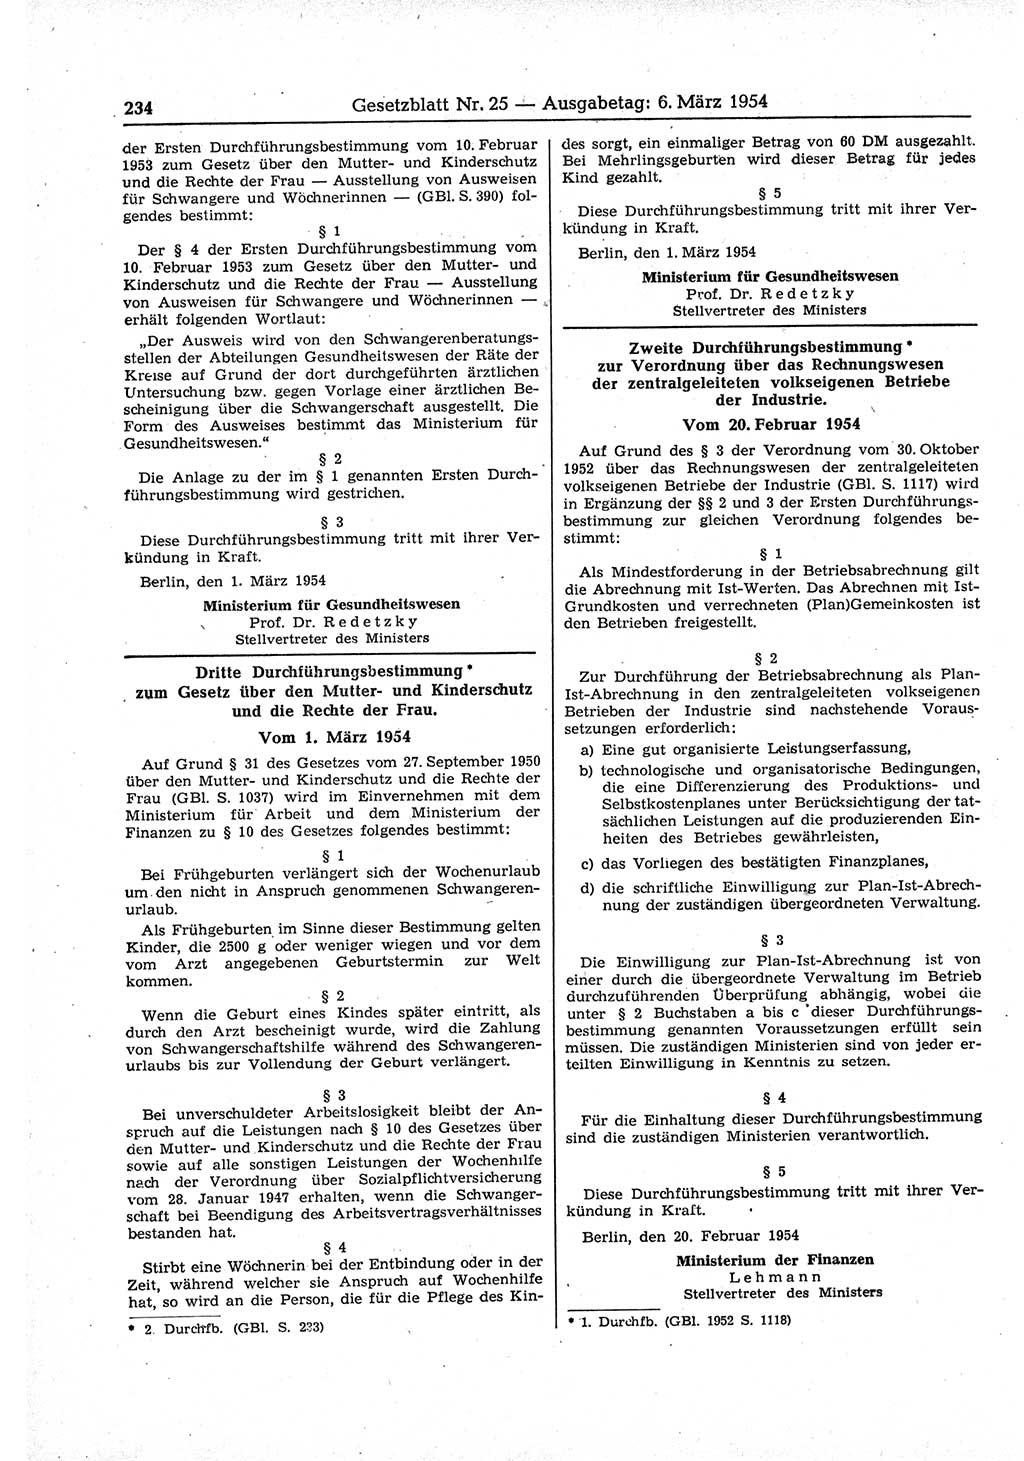 Gesetzblatt (GBl.) der Deutschen Demokratischen Republik (DDR) 1954, Seite 234 (GBl. DDR 1954, S. 234)